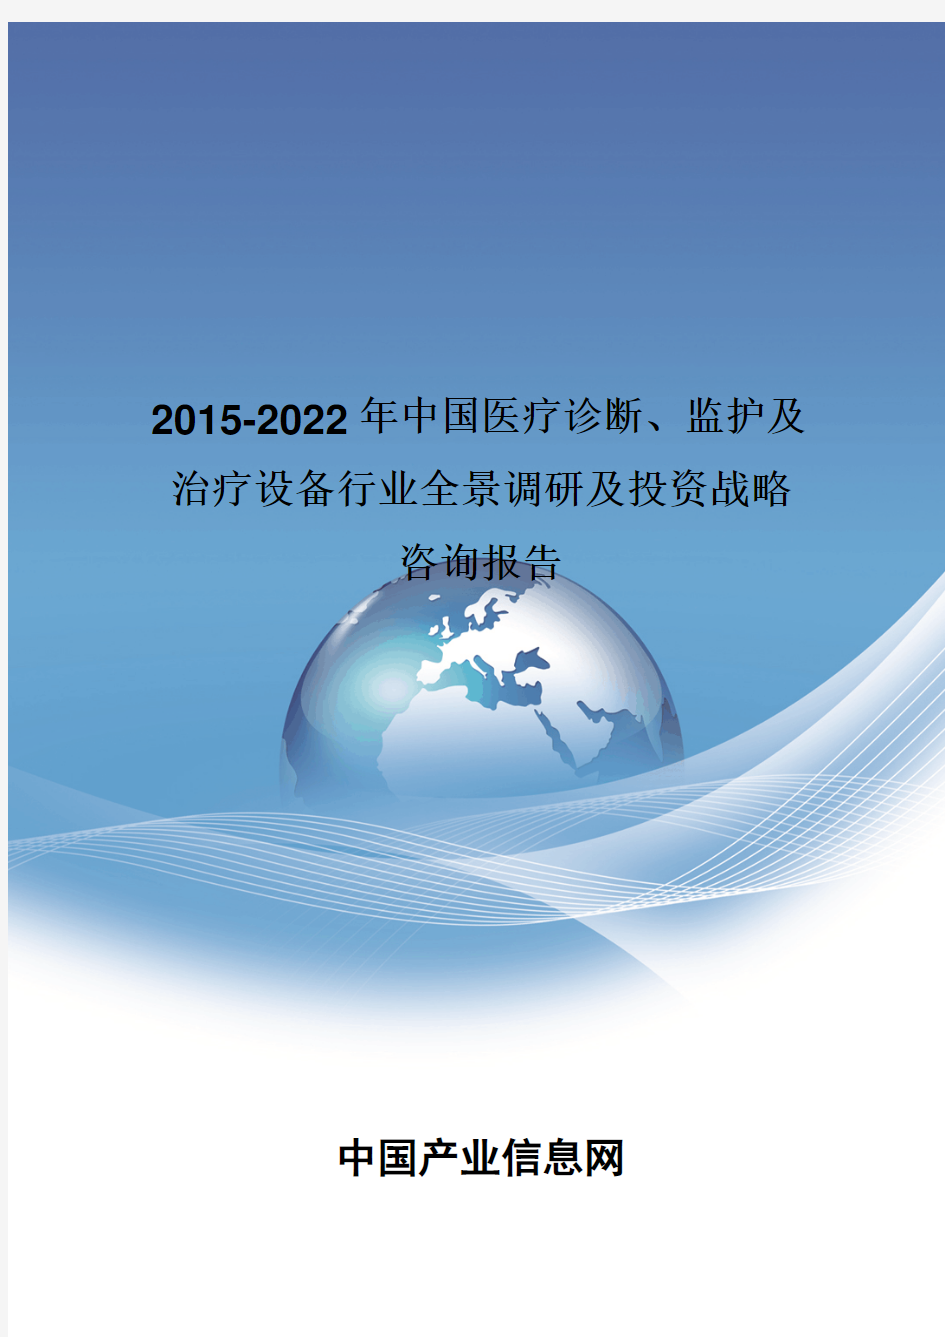 2015-2022年中国医疗诊断、监护及治疗设备行业全景调研报告